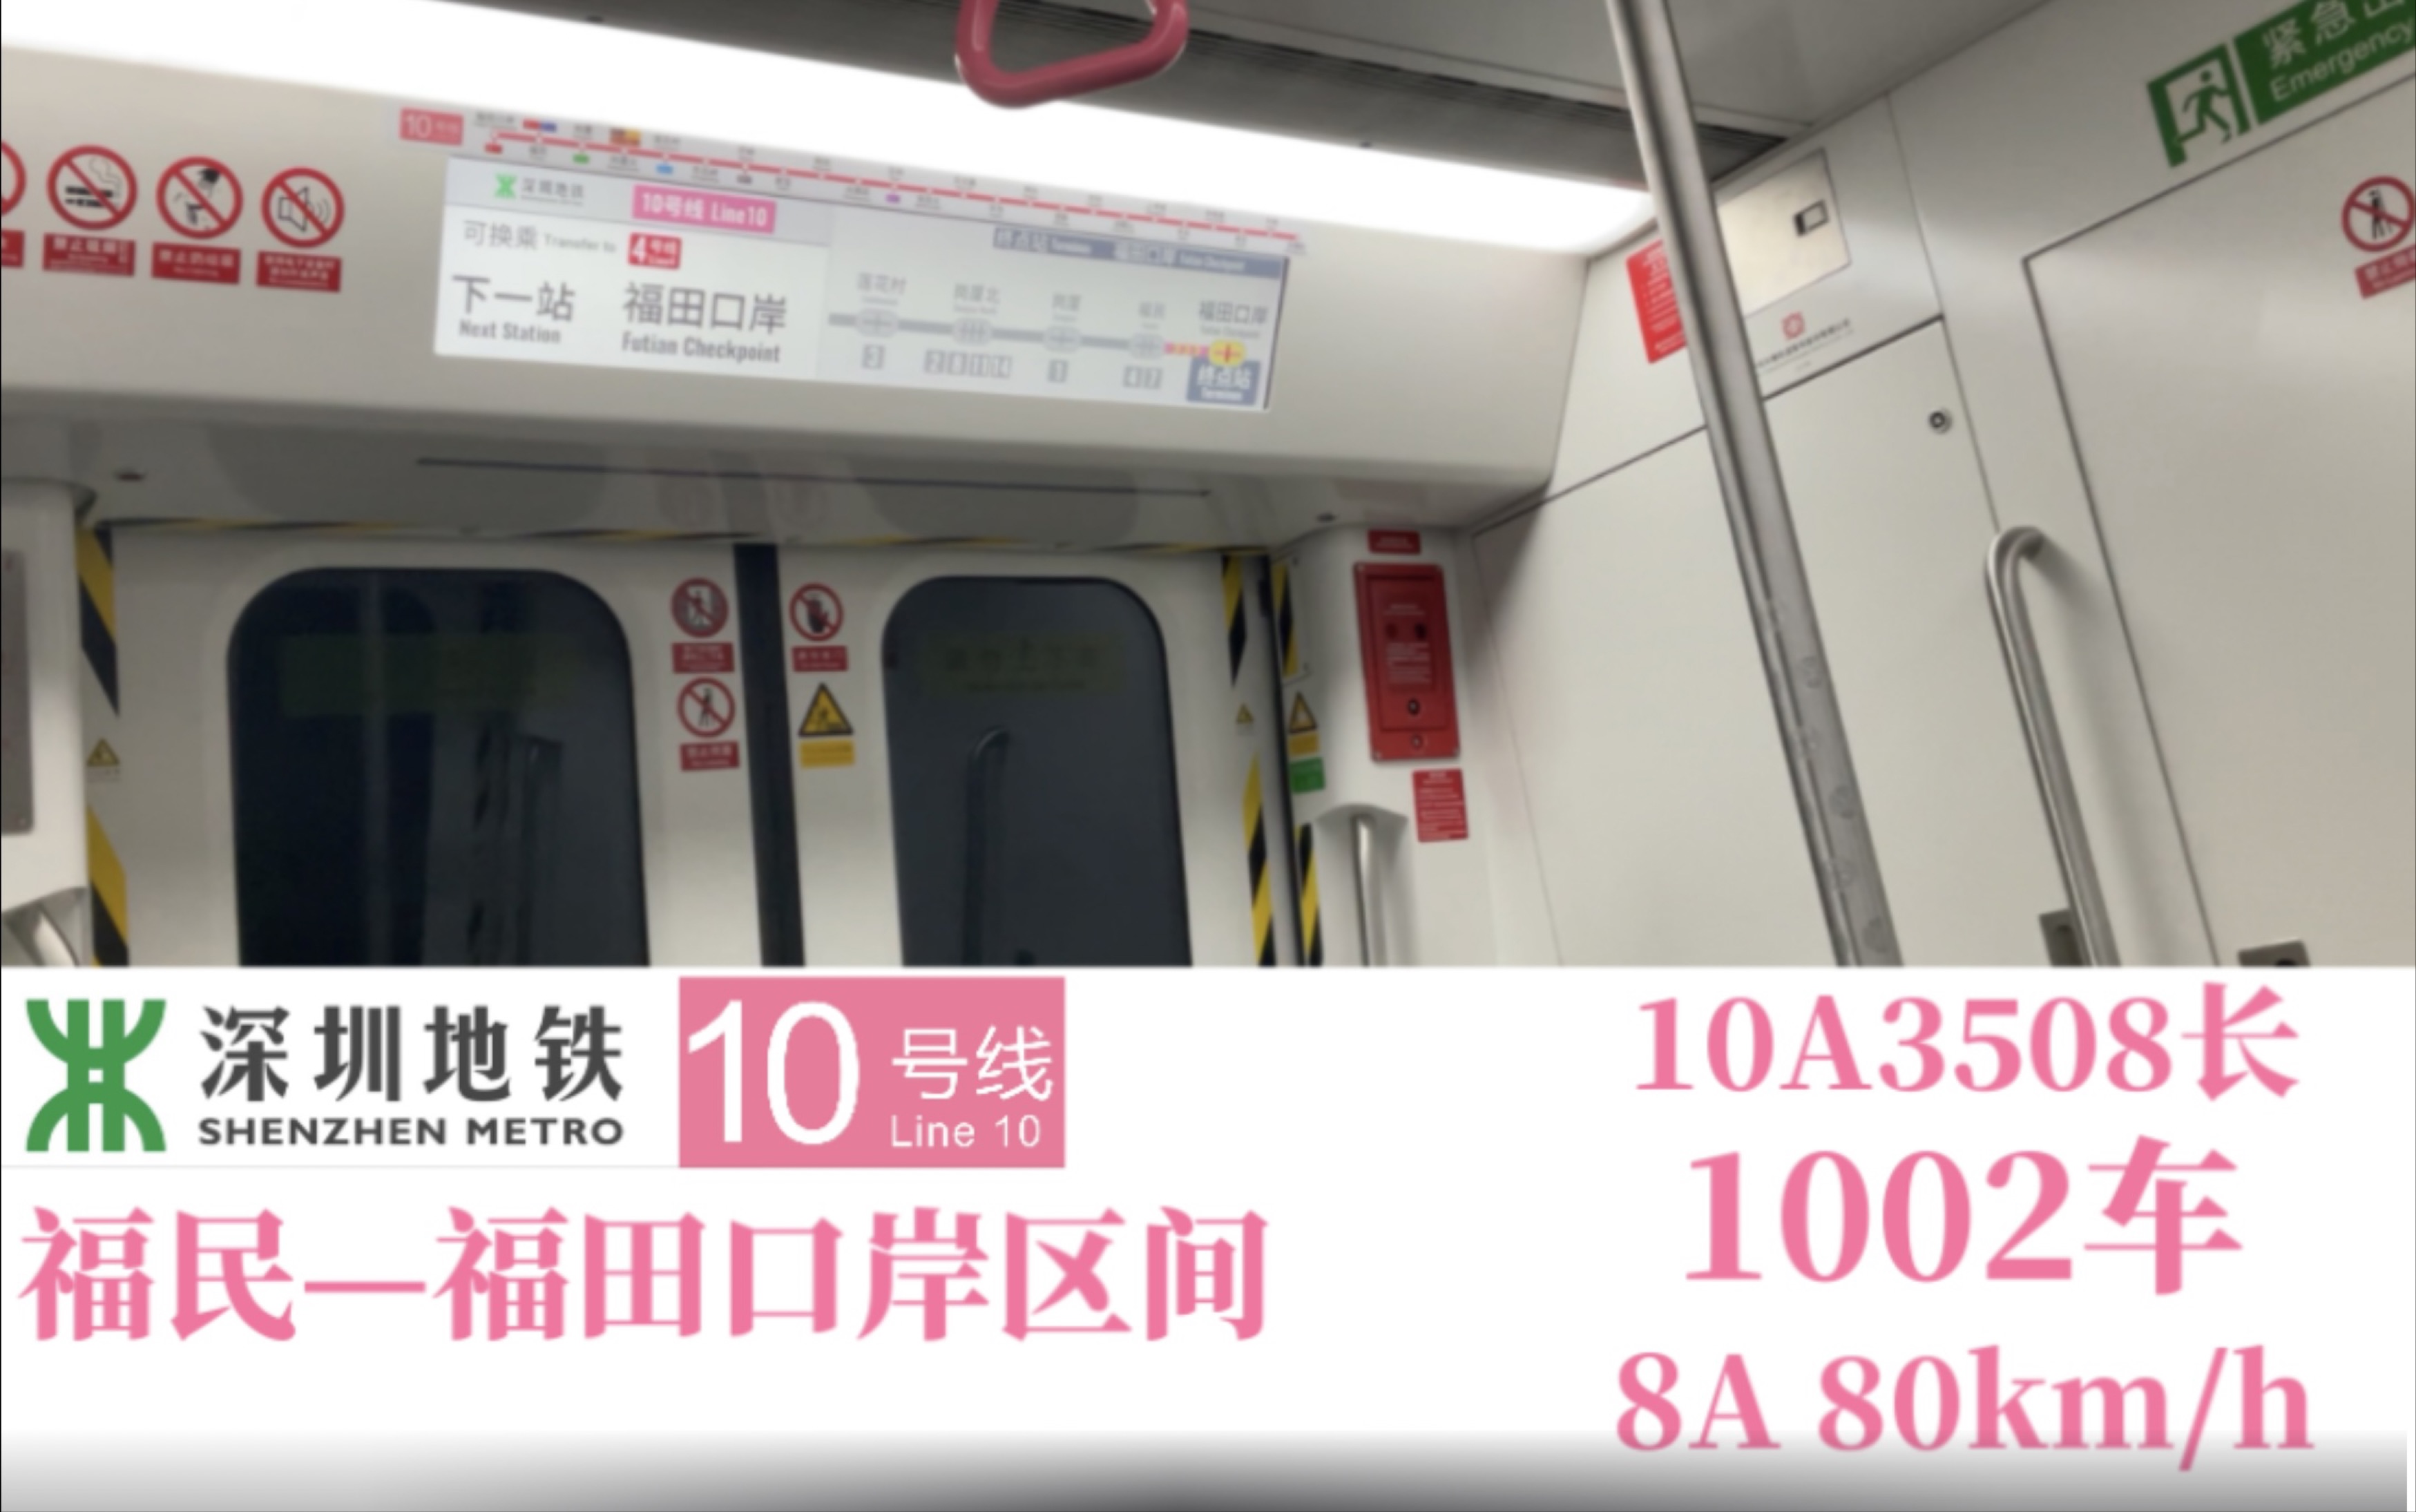 「深圳地铁」(看似与4号线平行,实际不是) 10号线福民—福田口岸区间